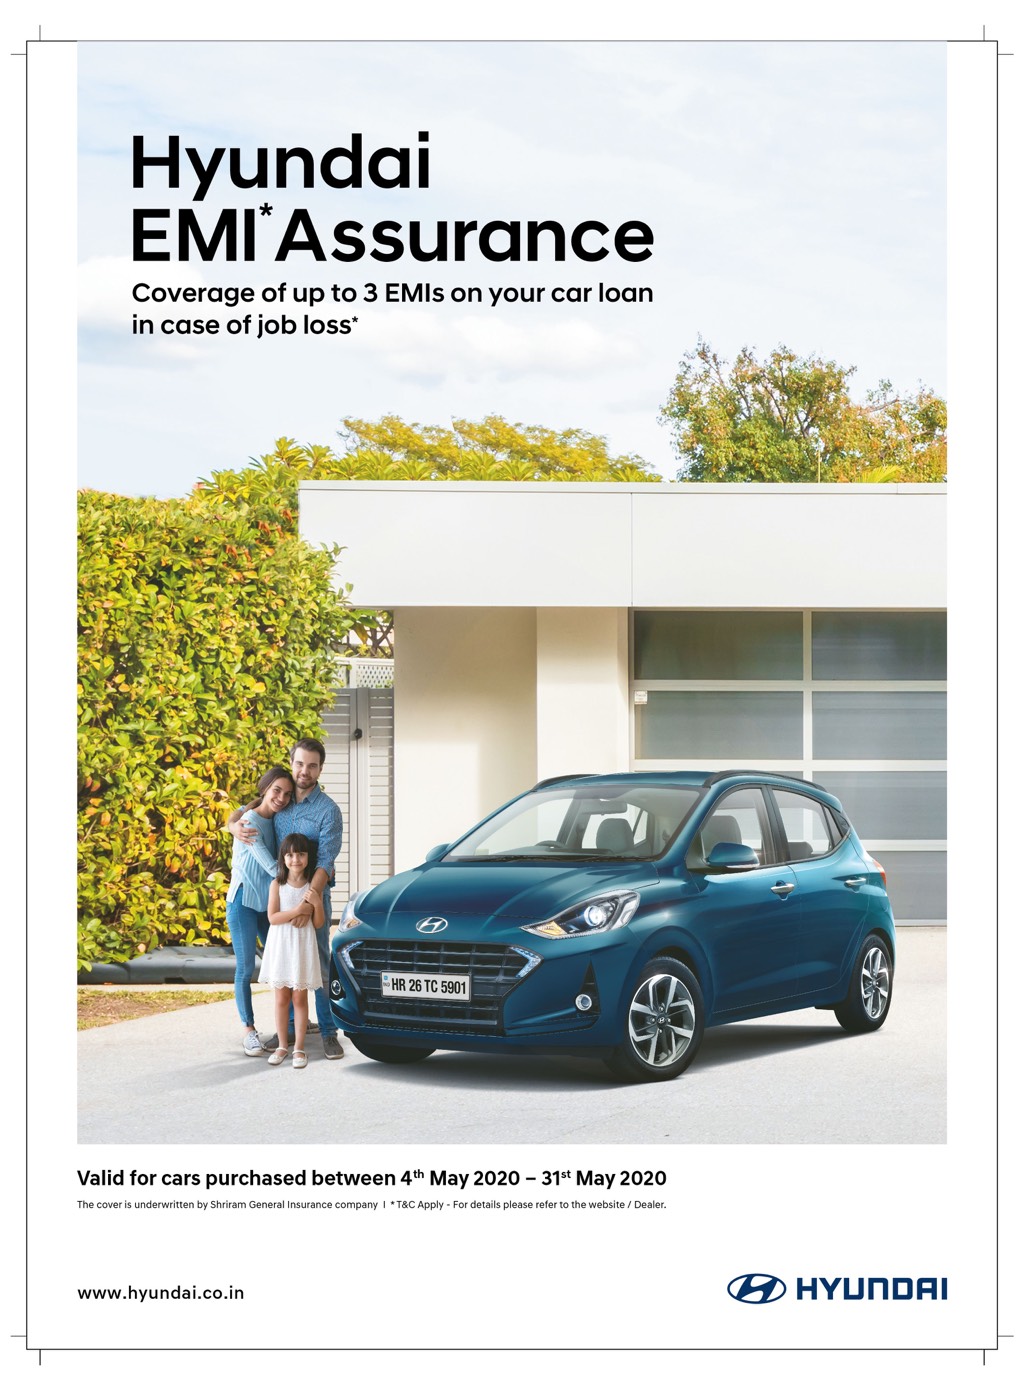 Hyundai EMI Assurance